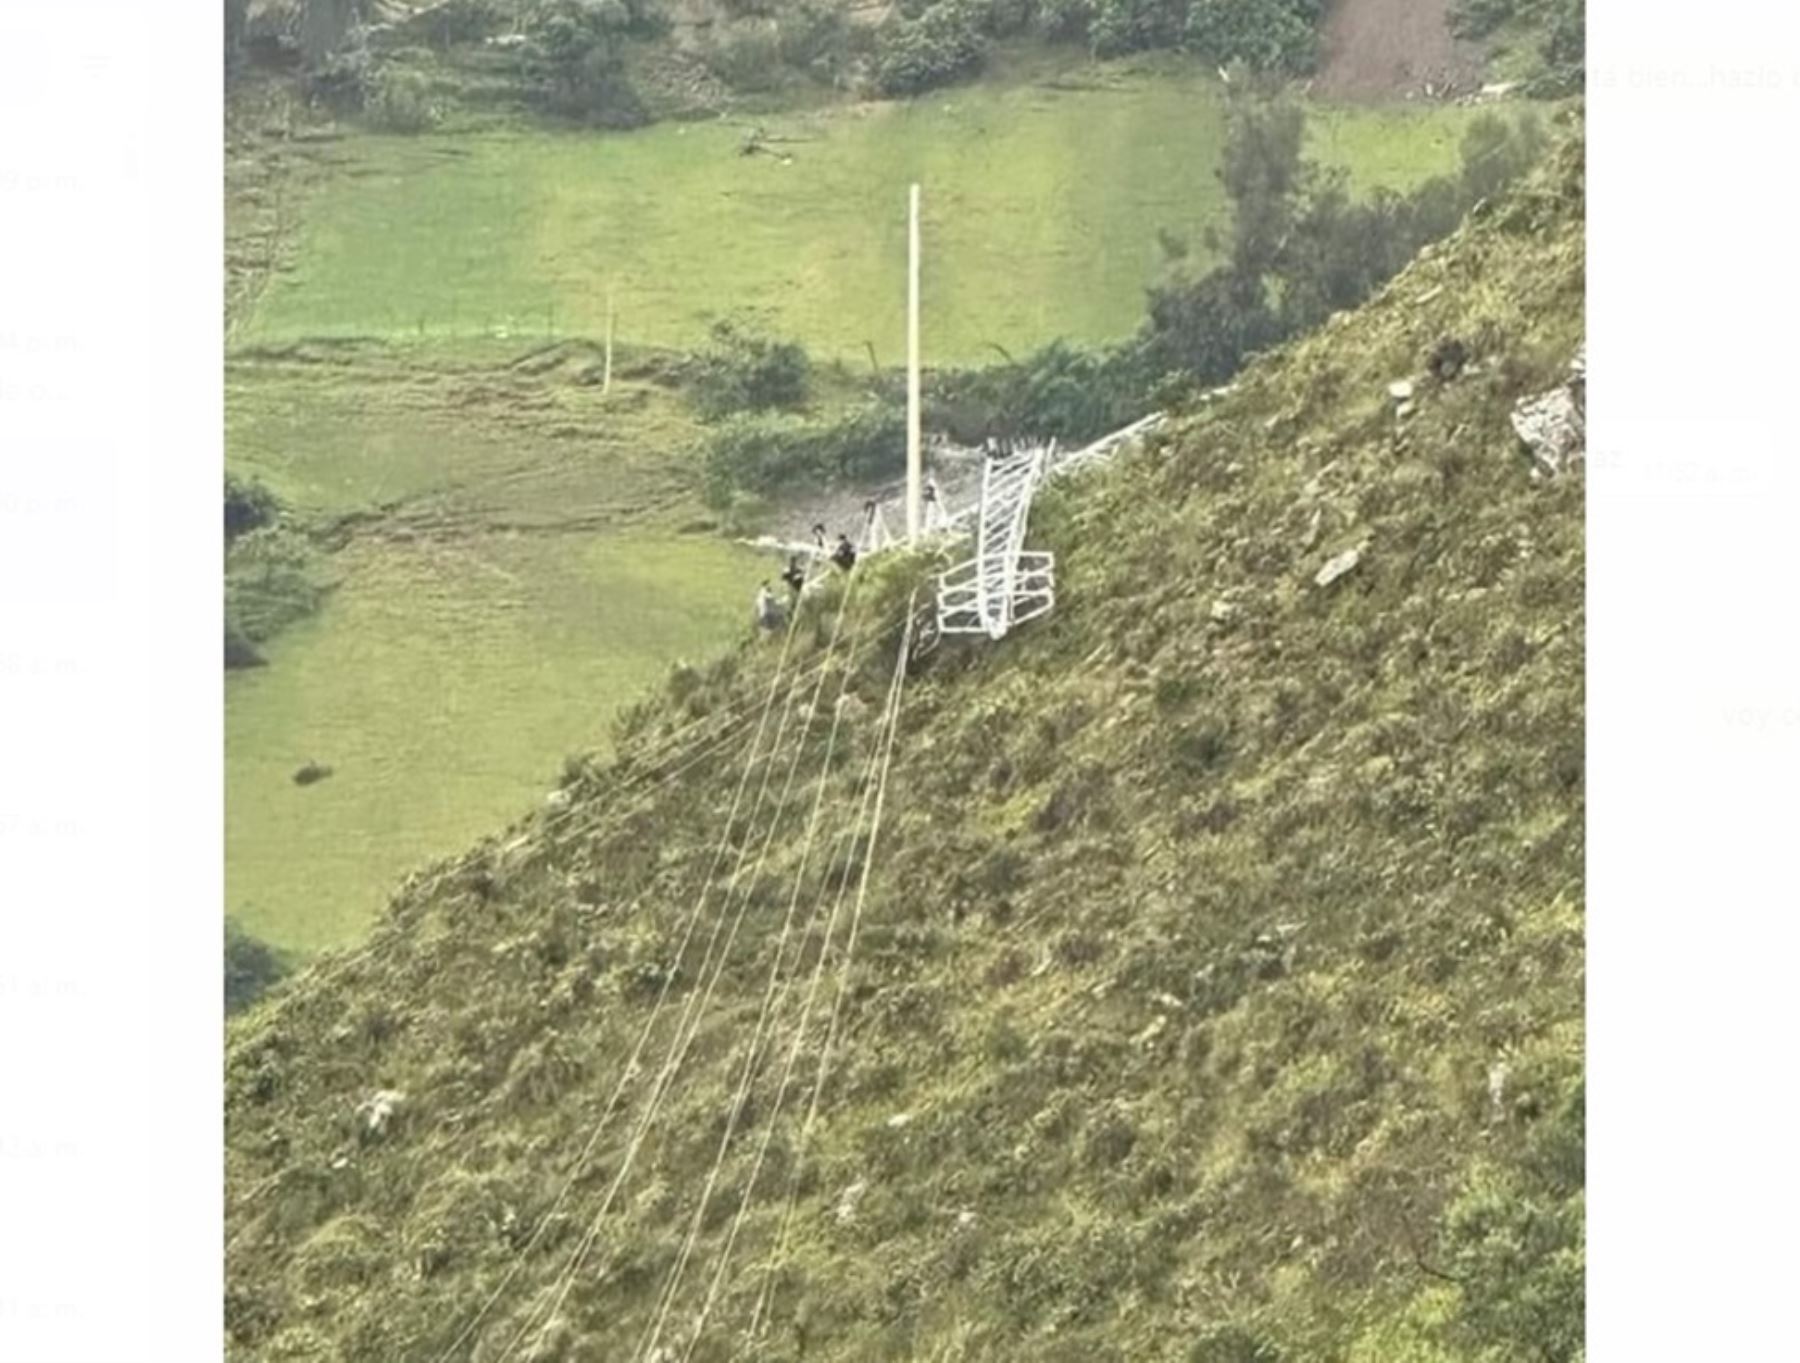 Presuntos mineros ilegales dinamitaron dos torres de alta tension ubicadas dentro de la zona donde opera la mina Poderosa, en el distrito y provincia de Pataz, en la sierra de La Libertad.